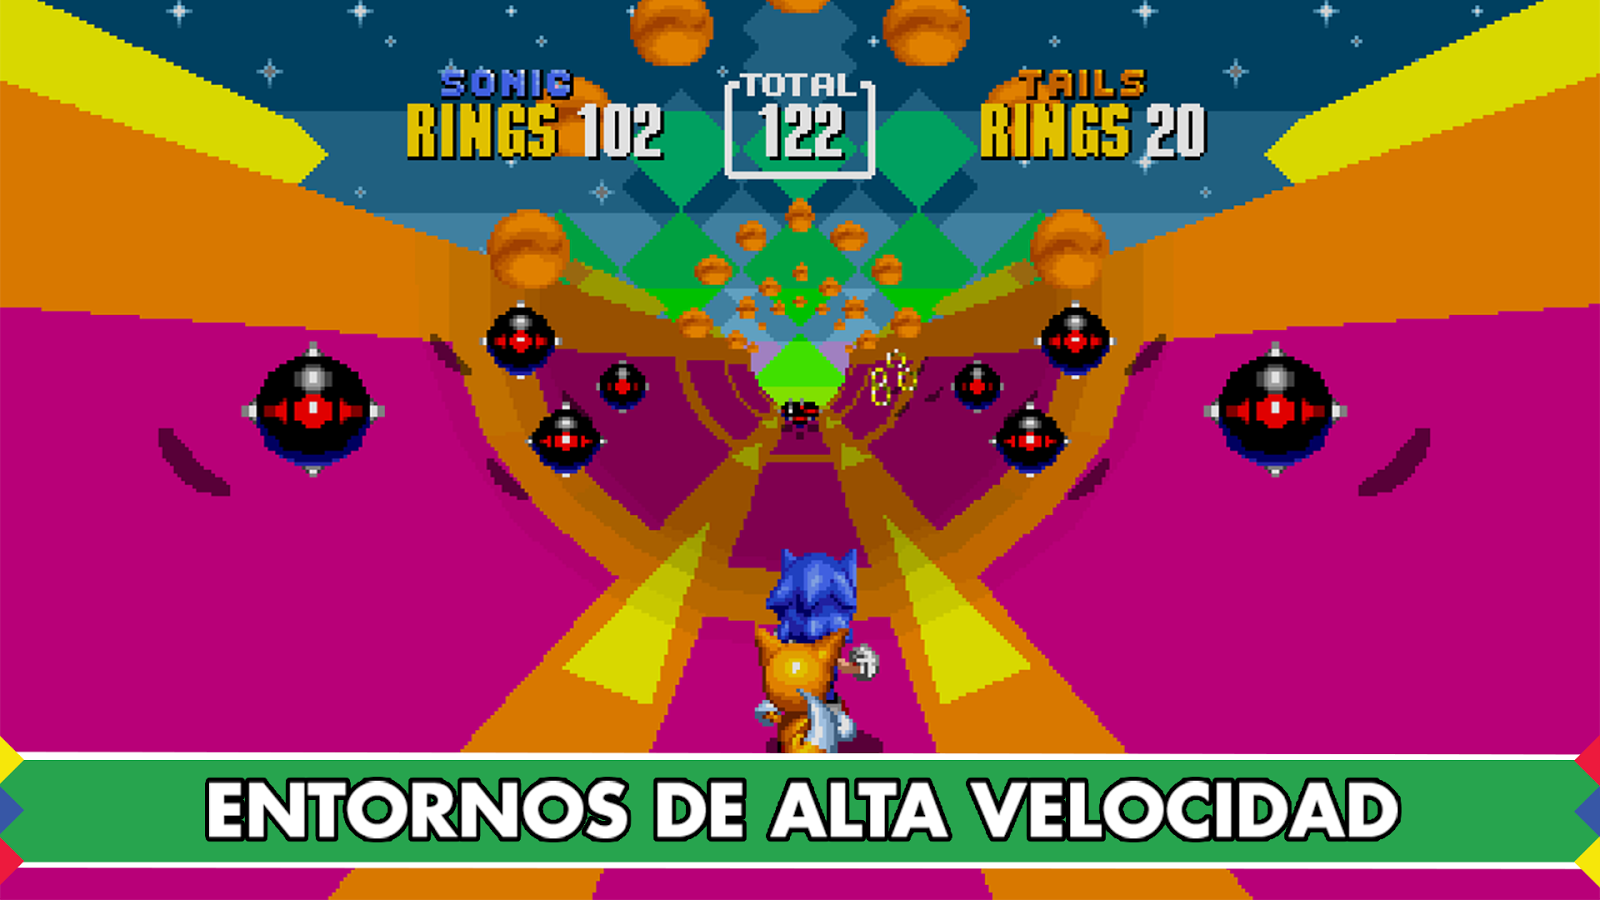 Sonic The Hedgehog 2 V3.0.2 Apk Full [Zippyshare] A93QRzHu0Tgcm5SK8TDnANFvFa8KNnQGychVOnHcUFAWyDEcJ30Sh31WzLLi087U22o=h900-rw